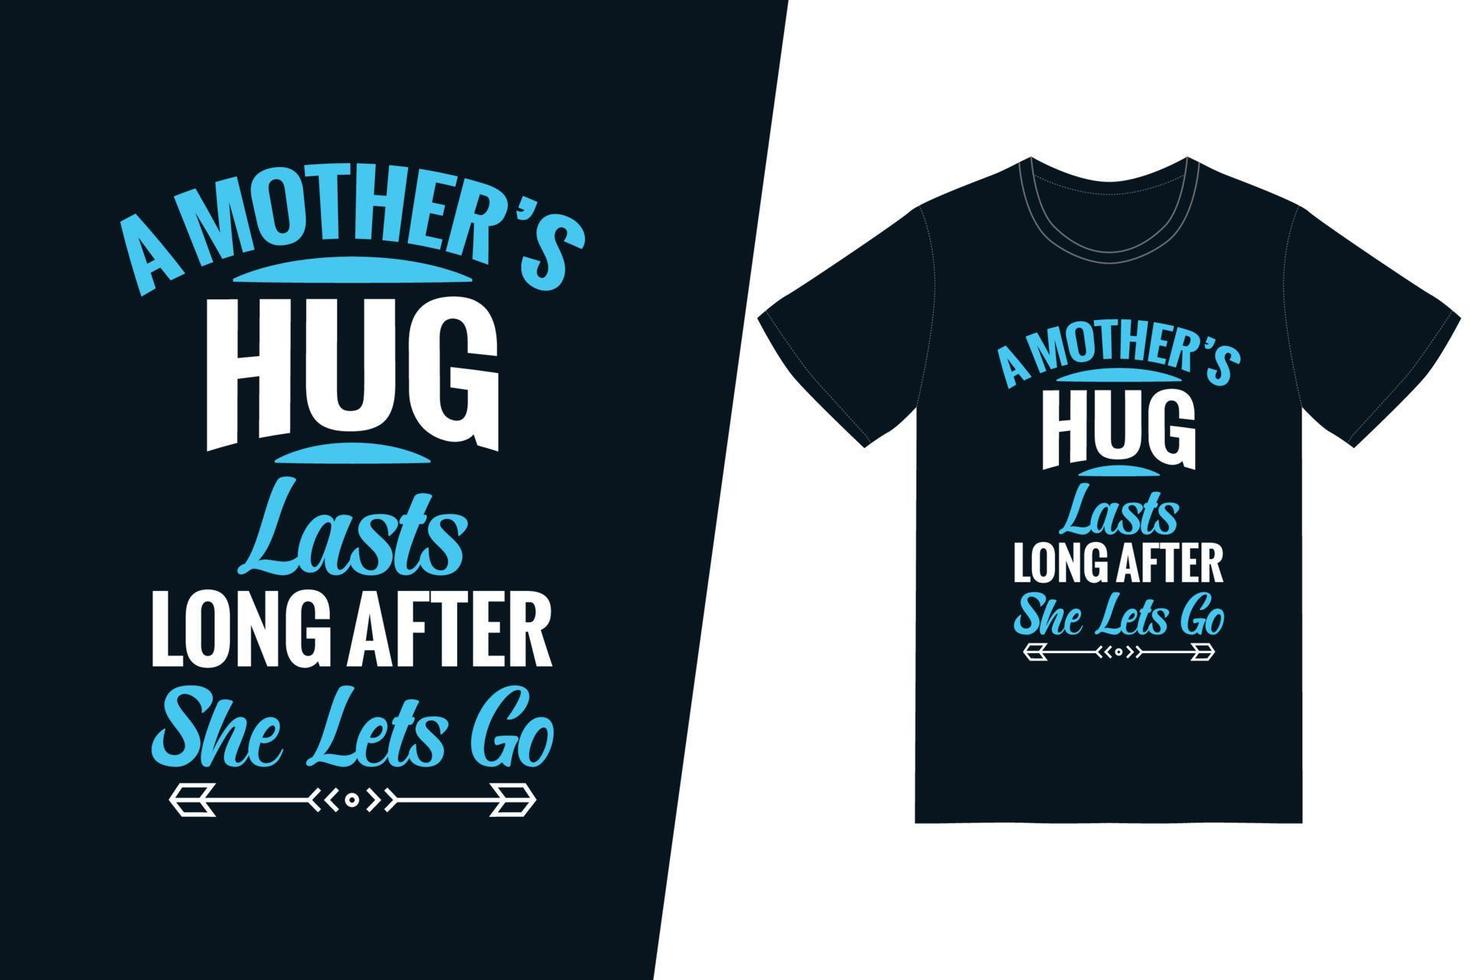 el abrazo de una madre dura mucho después de que deja ir el diseño de la camiseta. vector de diseño de camiseta de feliz día de la madre. para la impresión de camisetas y otros usos.